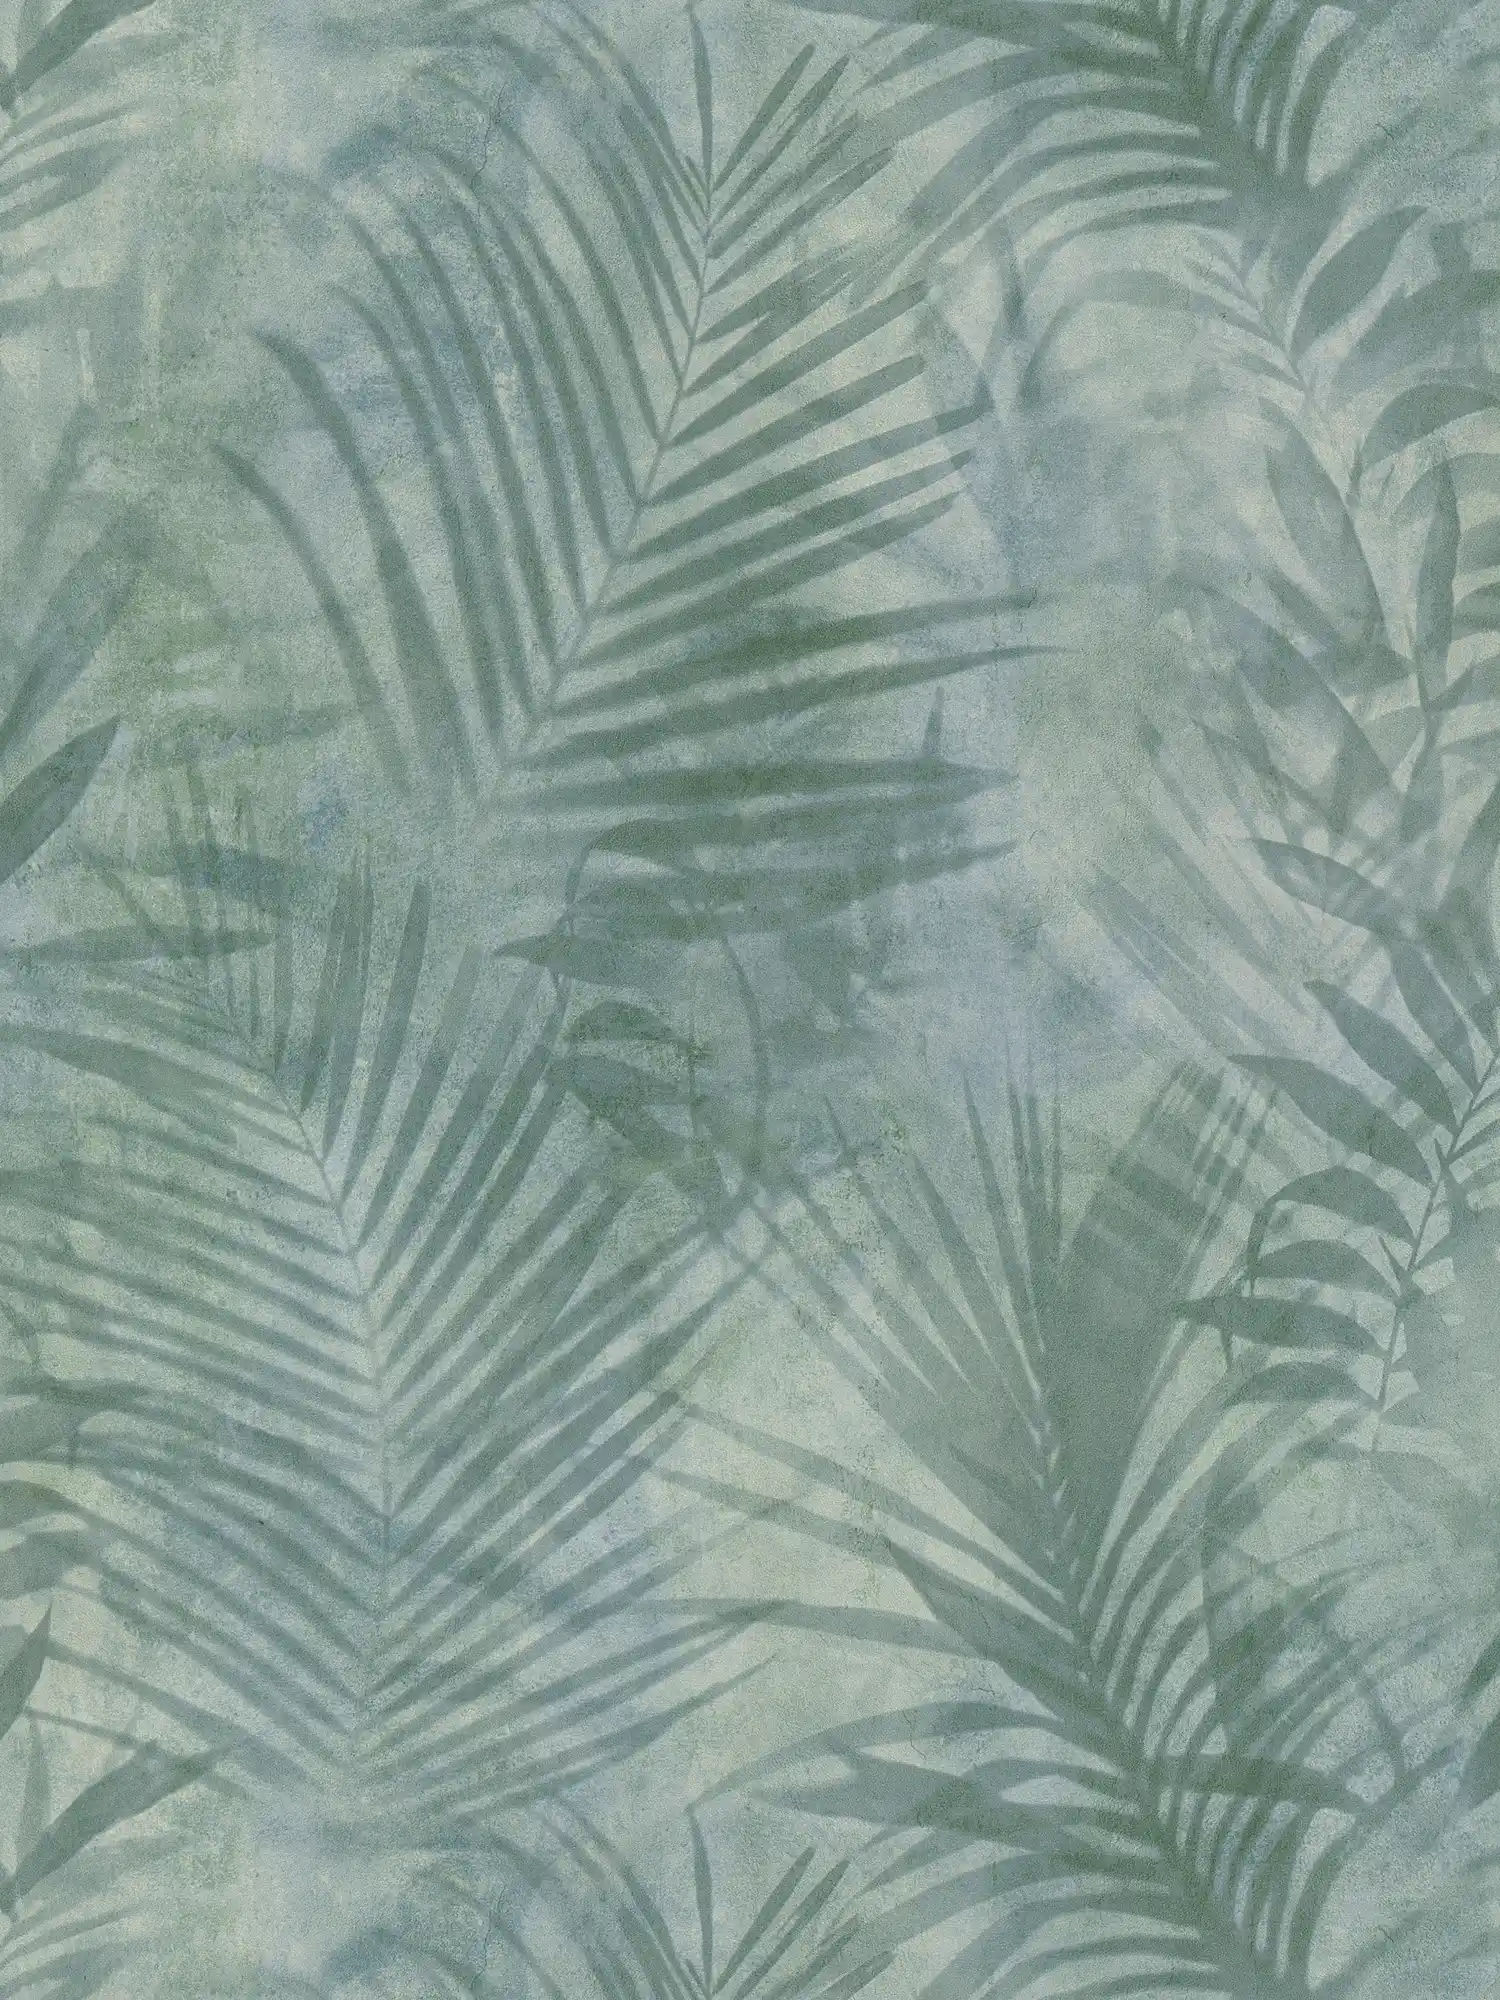 Papier peint motif palmier en lin - vert, bleu, gris
